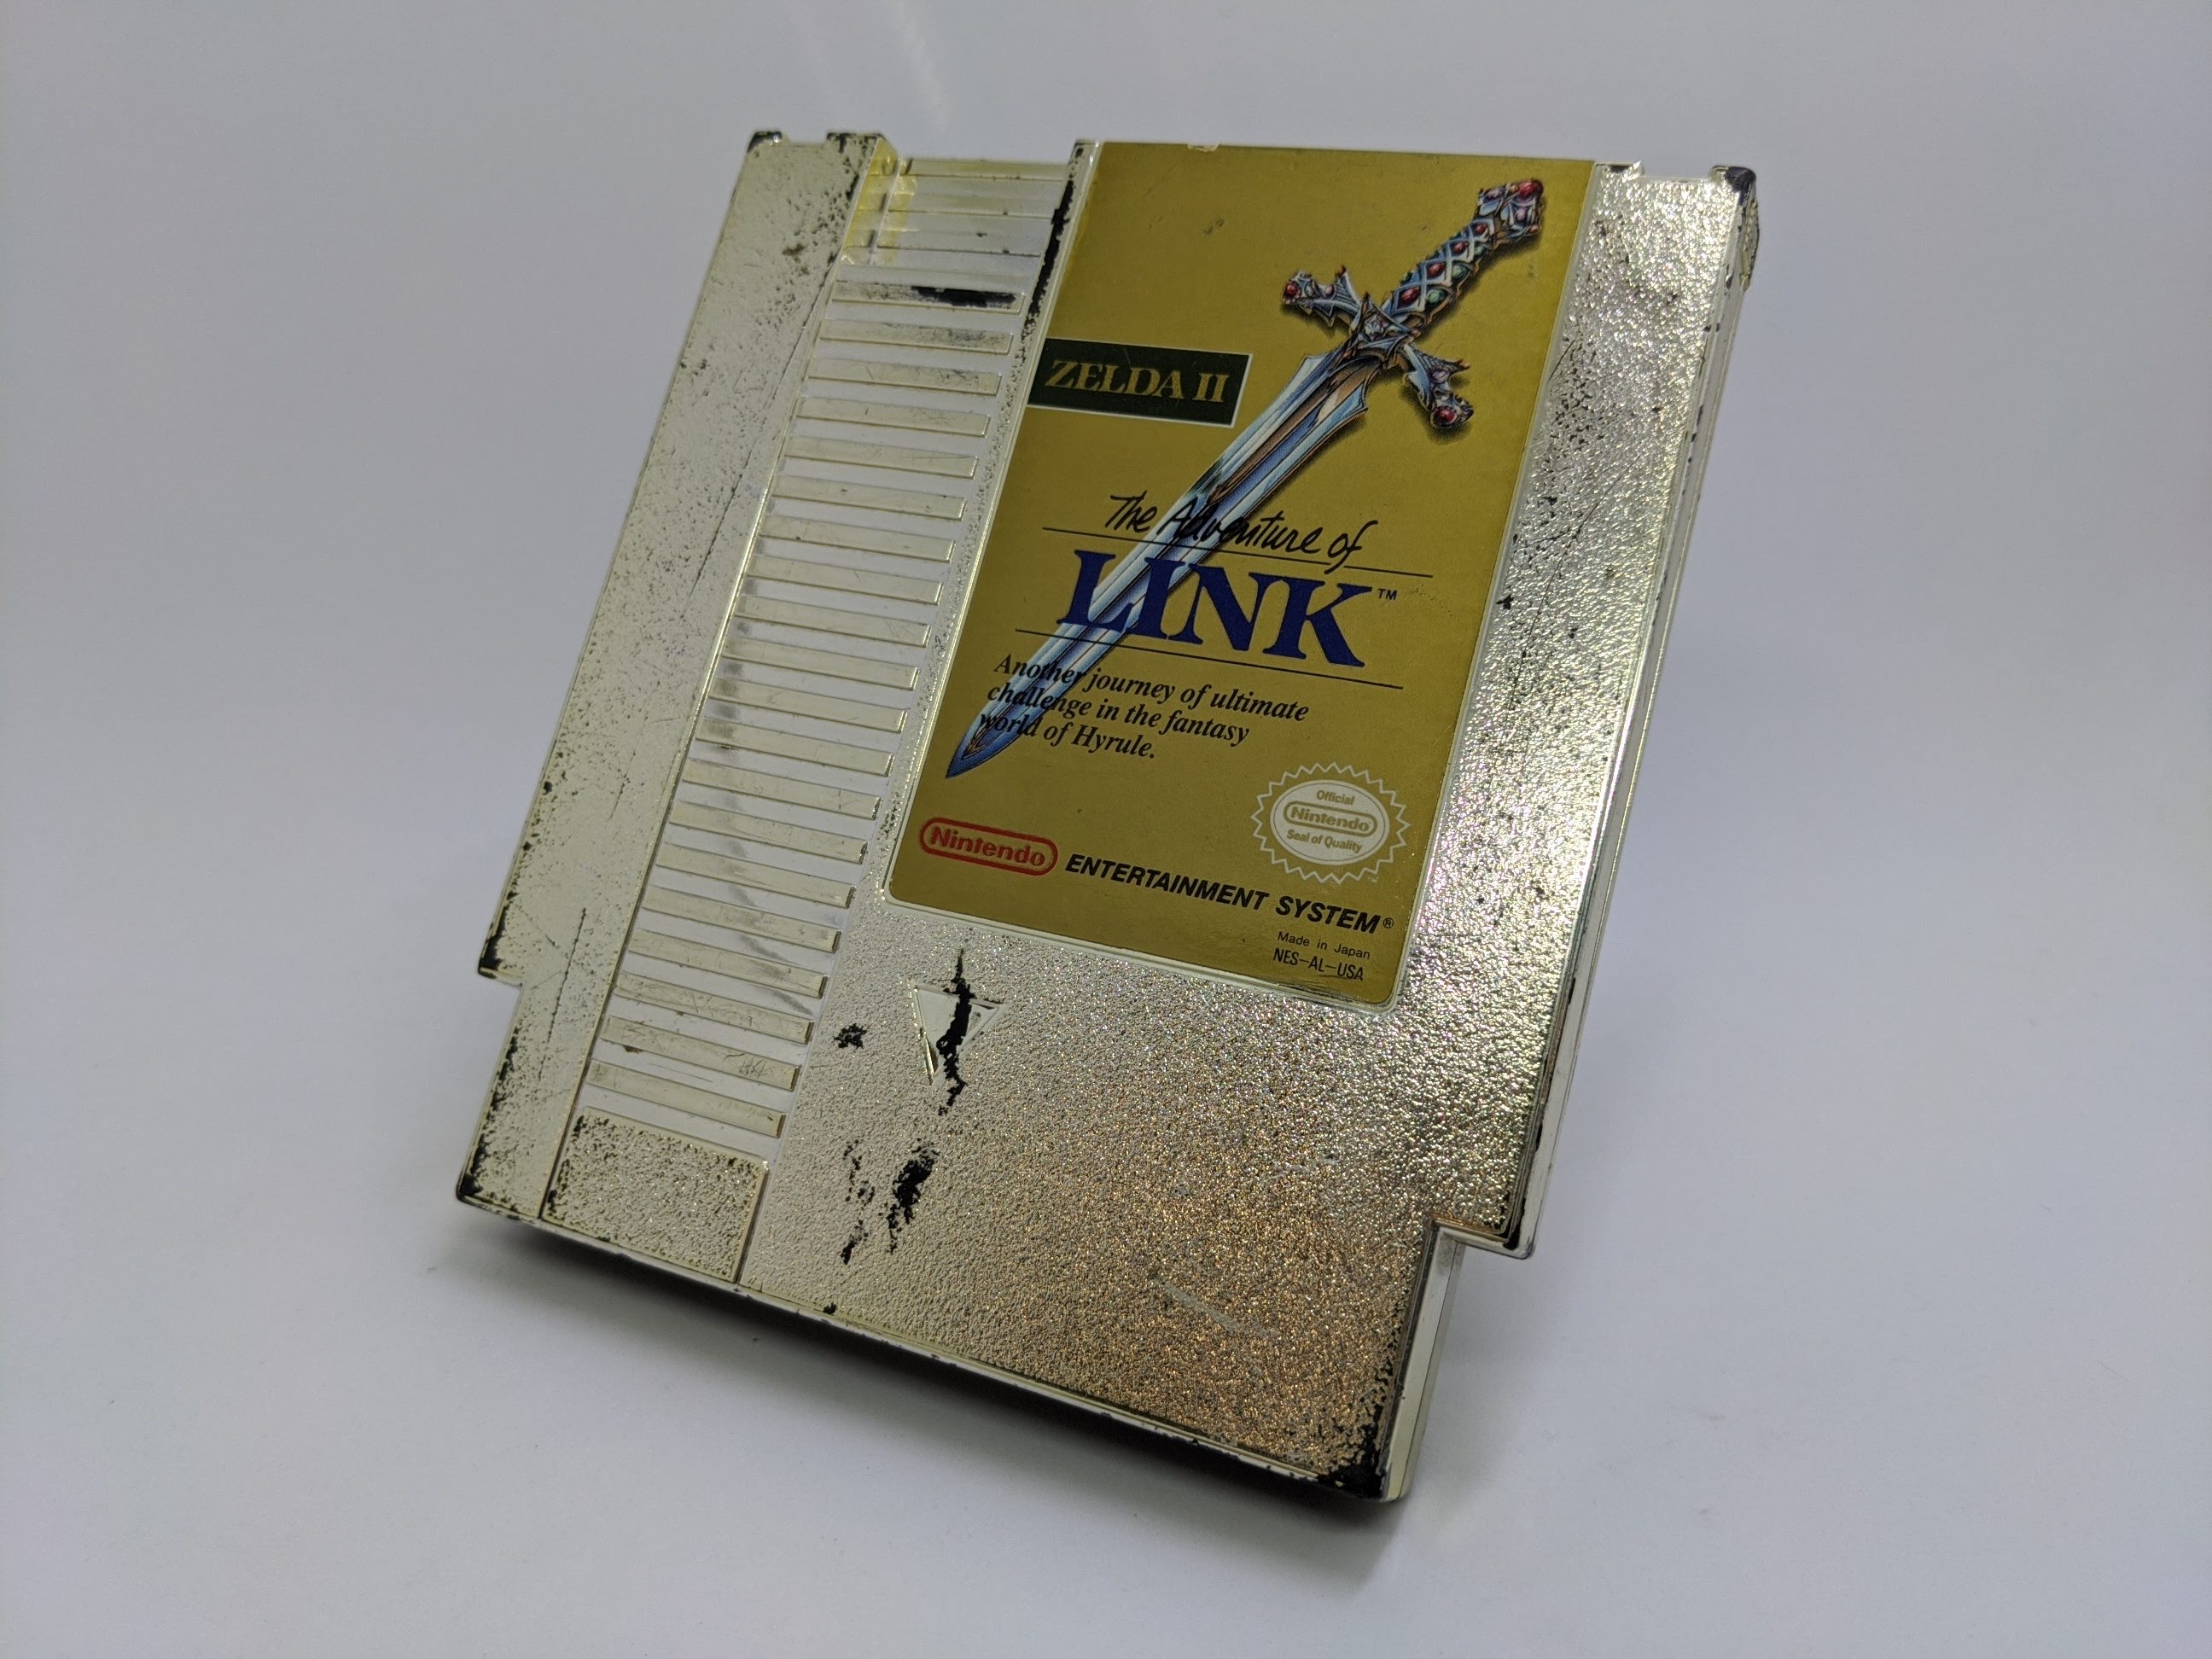 Zelda II The Adventure Of Link NES